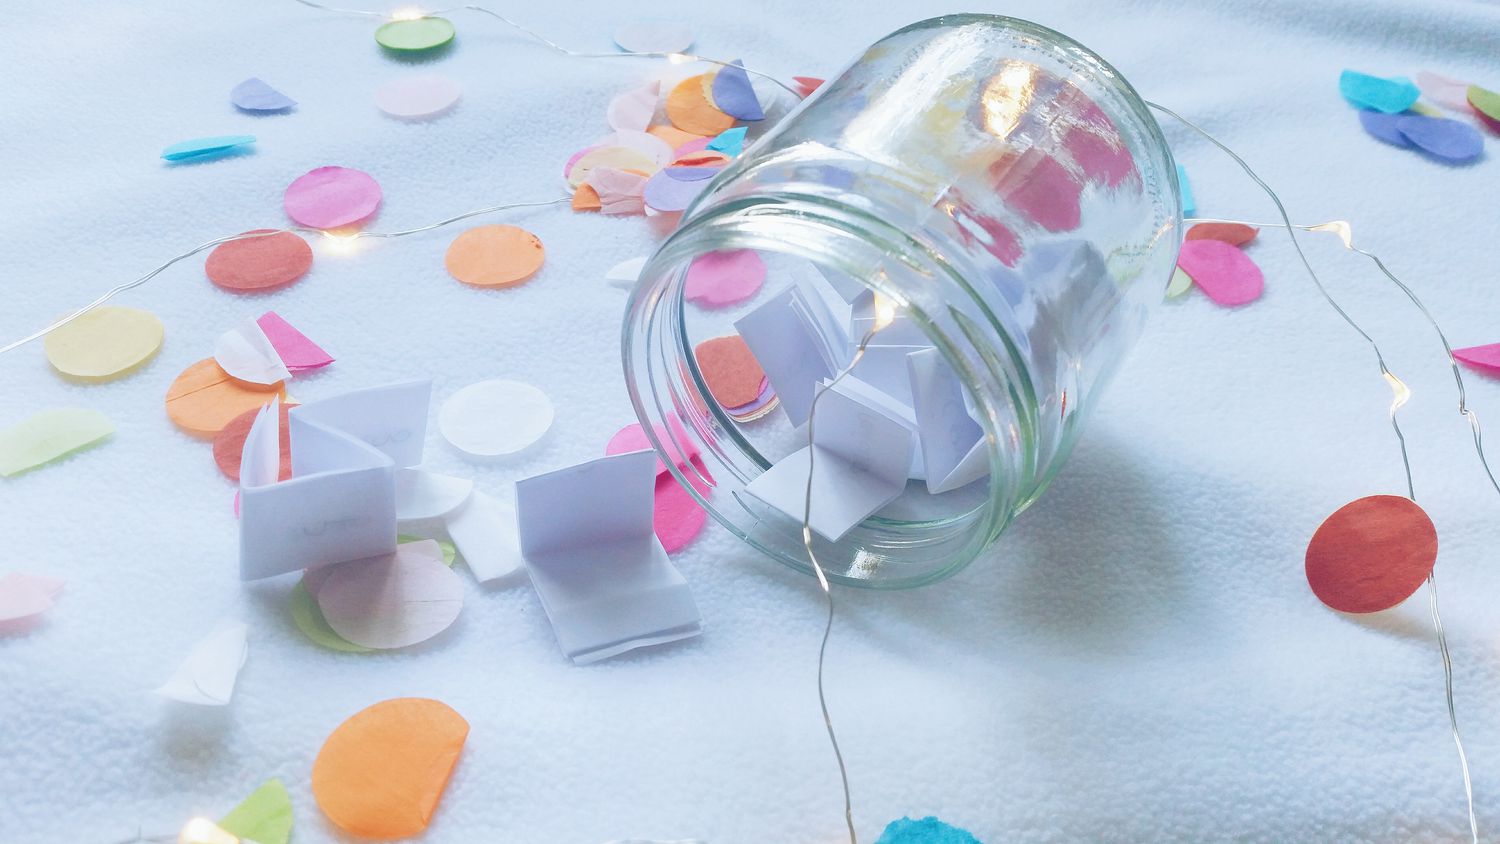 Wunschglas gefüllt mit Papierwünschen auf einem Tisch mit Konfetti